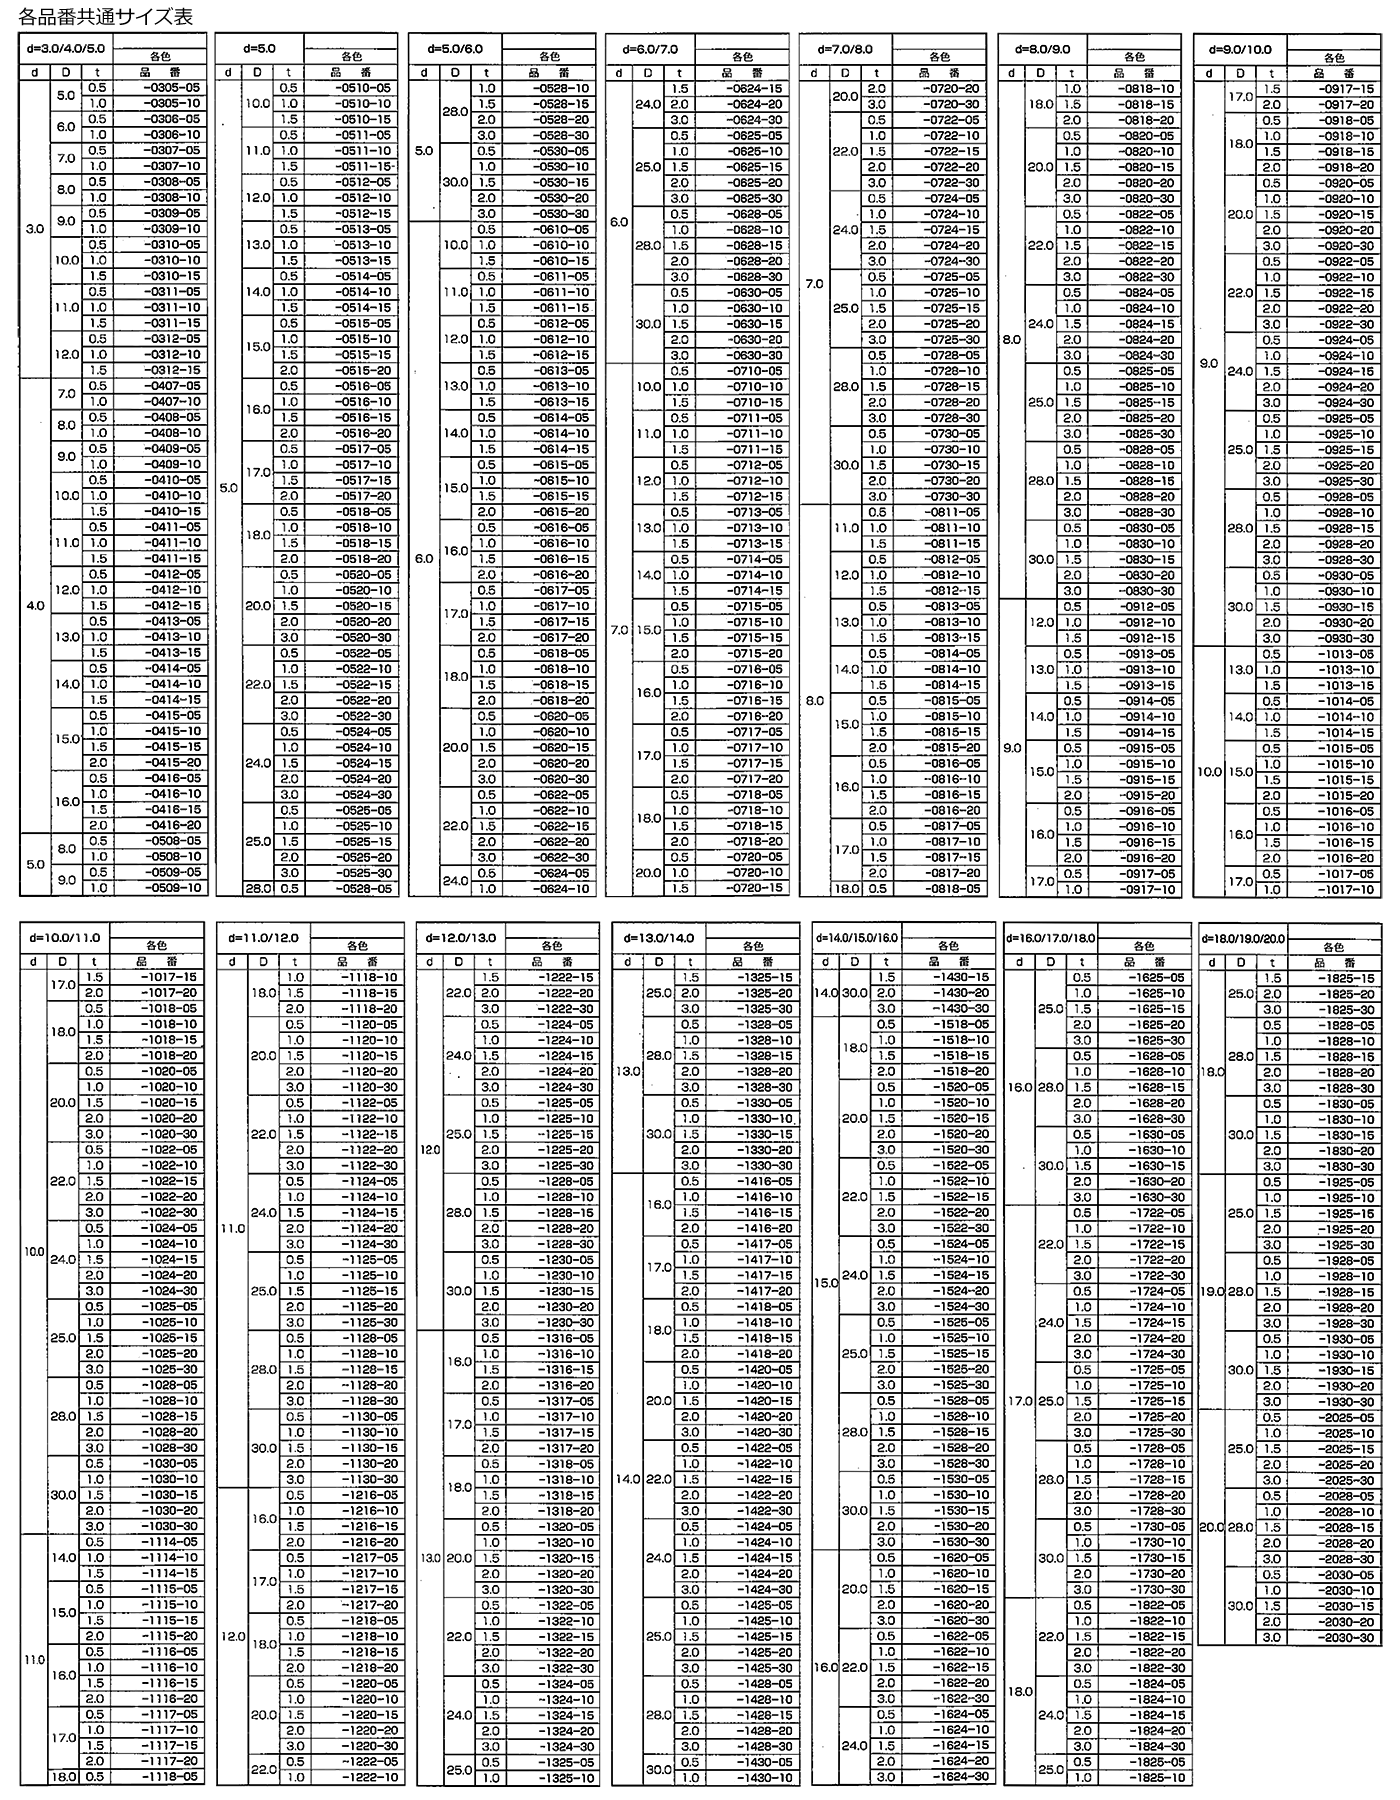 ウレタン 丸型平座金 (丸ワッシャー) UREW-0000-00 (うす茶系)の寸法表